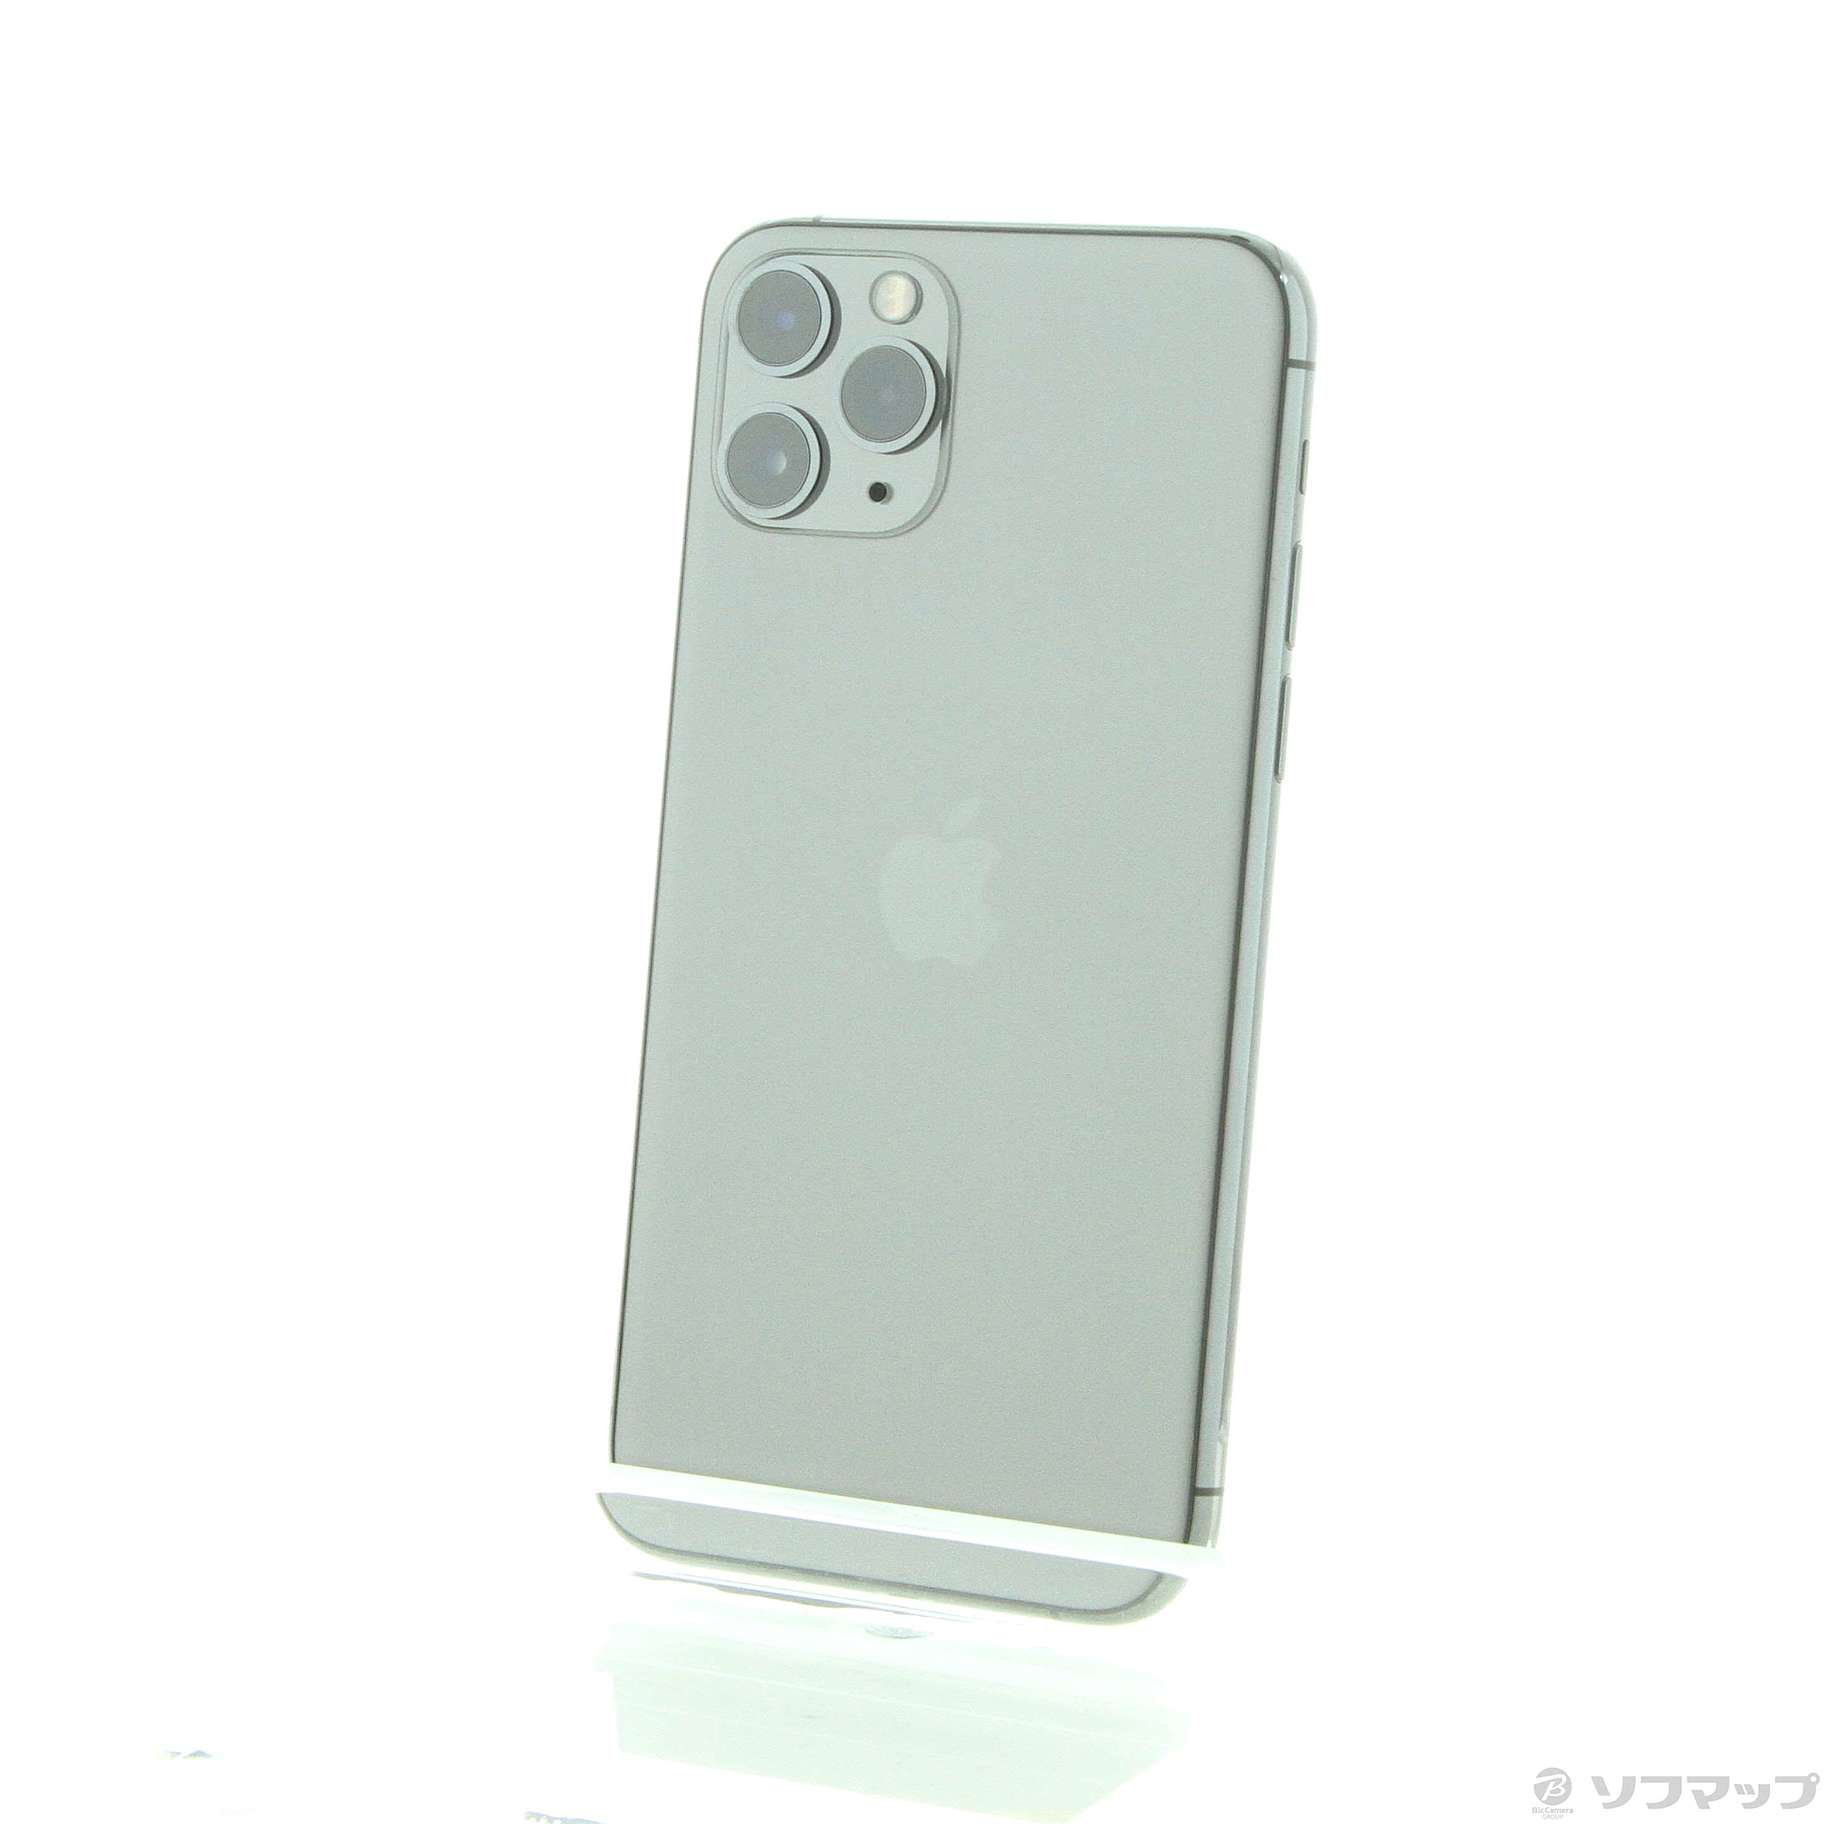 iPhone 11 Pro スペースグレイ 64 GB Softbank